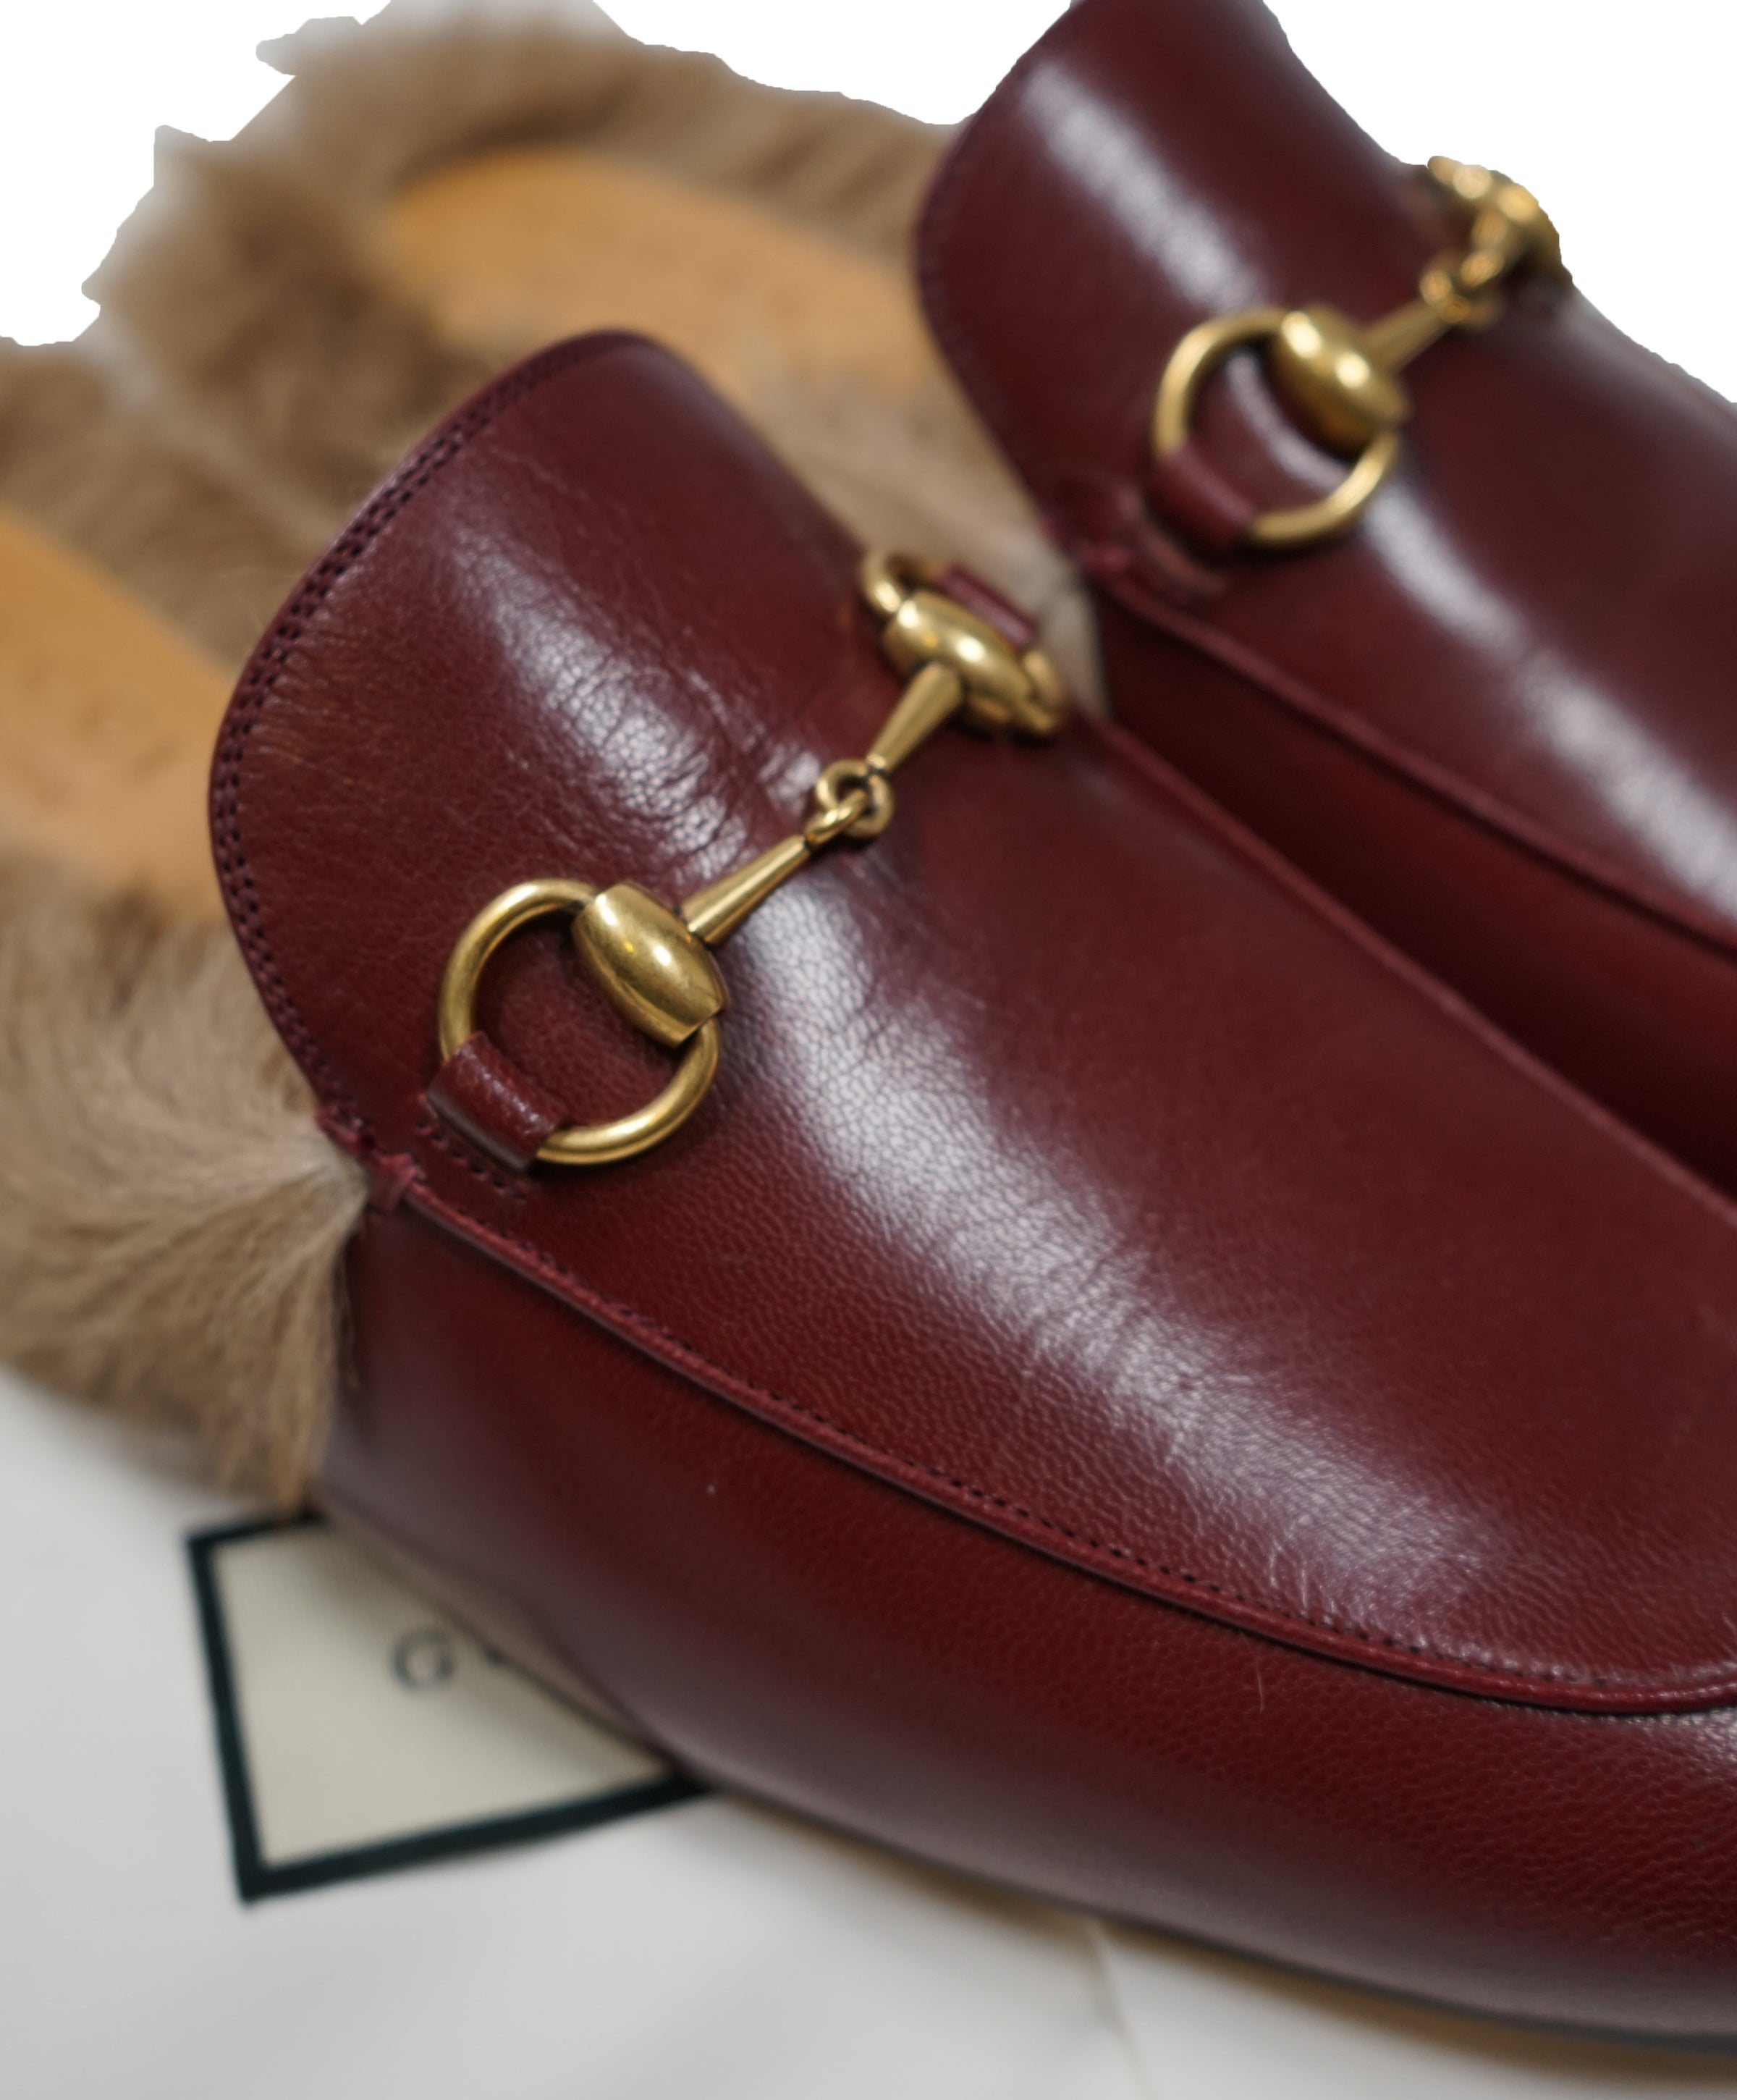 GUCCI - "Princeton" Fur Lined Open Loafers Slides Burgundy - 10.5 – Hanger